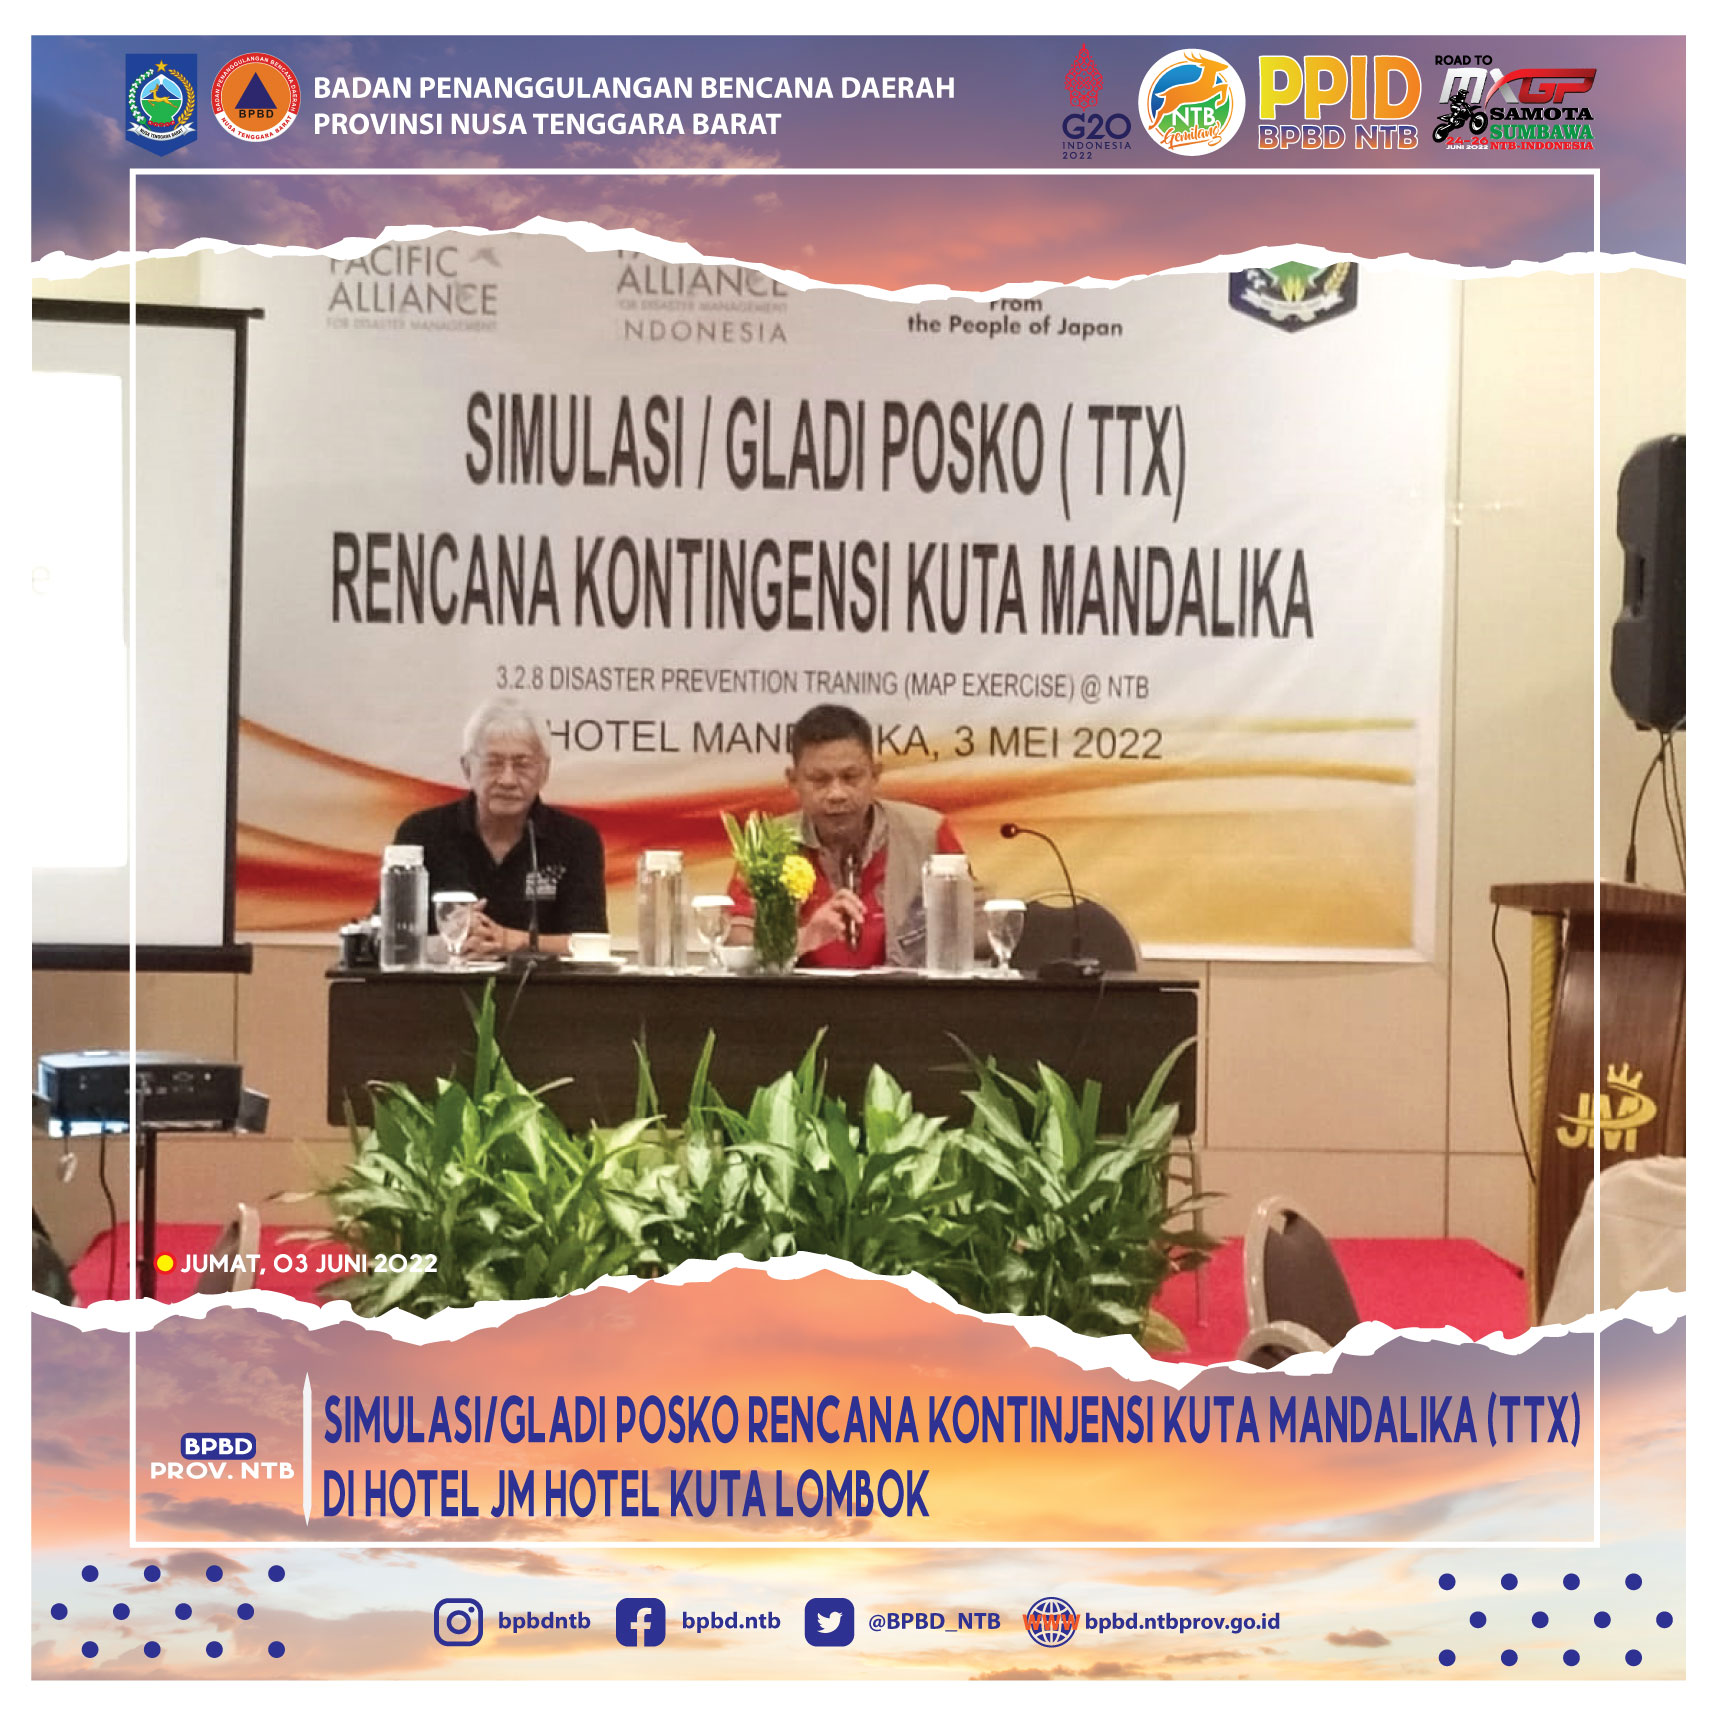 Simulasi/Gladi Posko Rencana Kontinjensi Kuta Mandalika (TTX) di  JM Hotel Kuta Lombok ( Jumat, 03 Juni 2022)